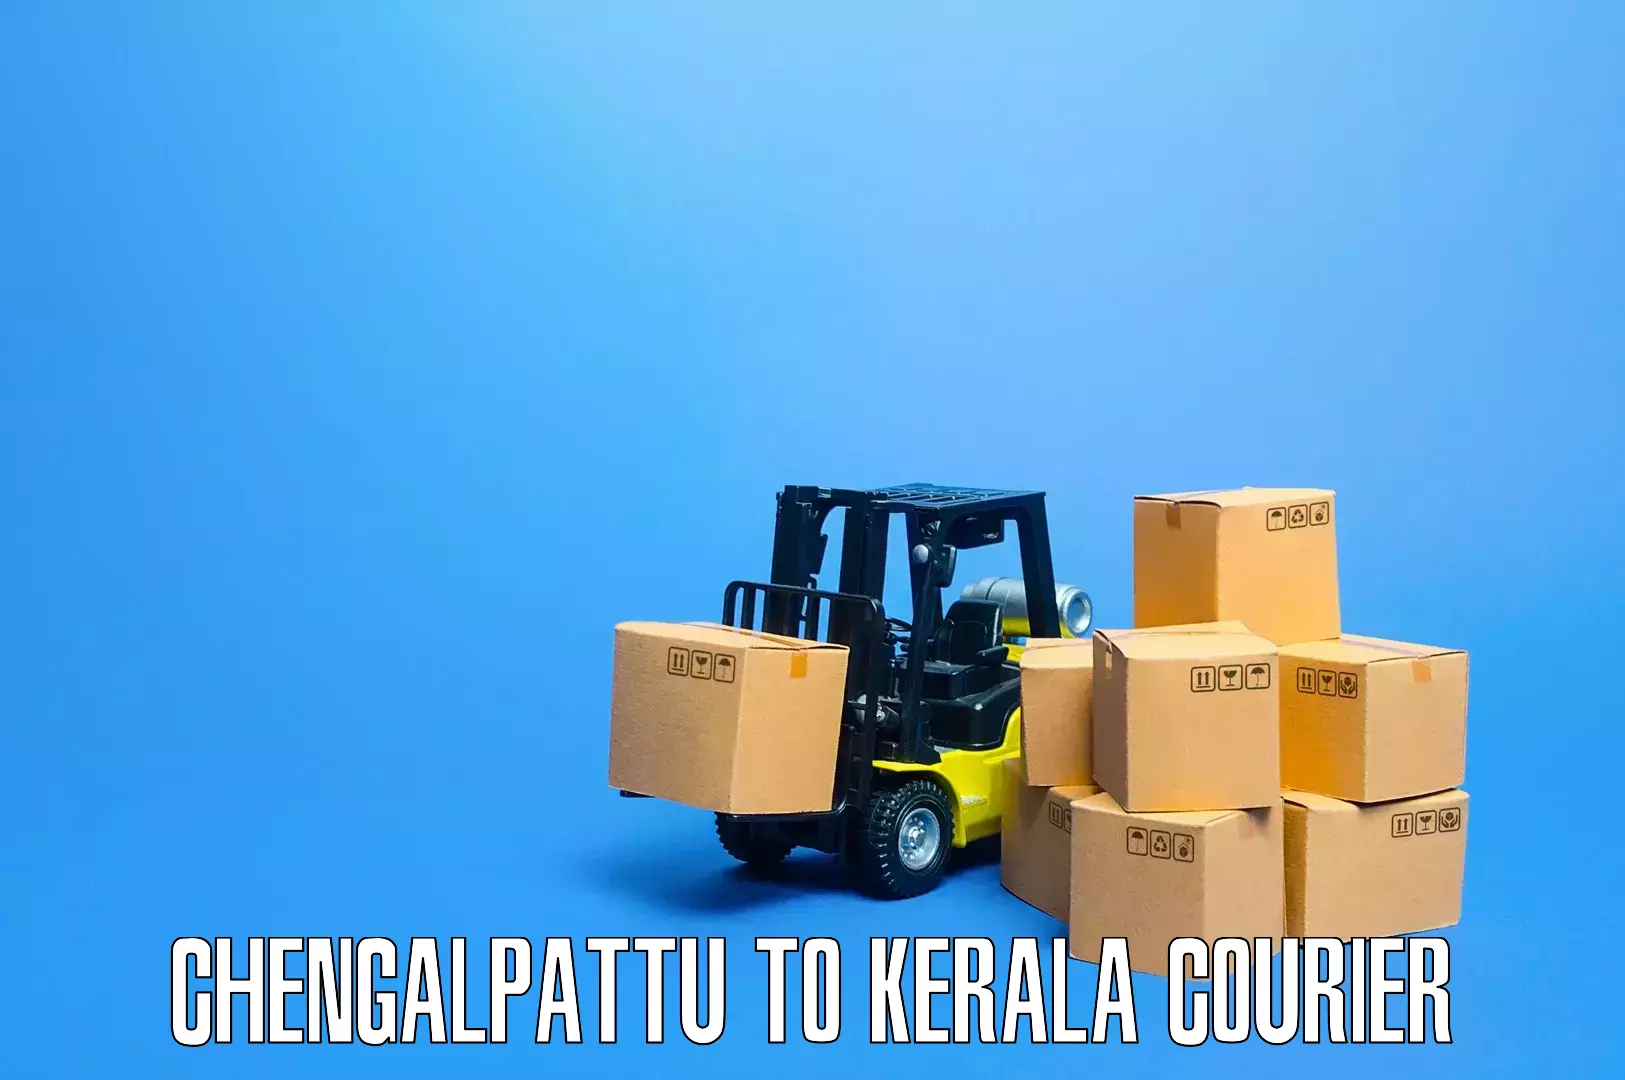 Furniture moving assistance Chengalpattu to Thiruvananthapuram